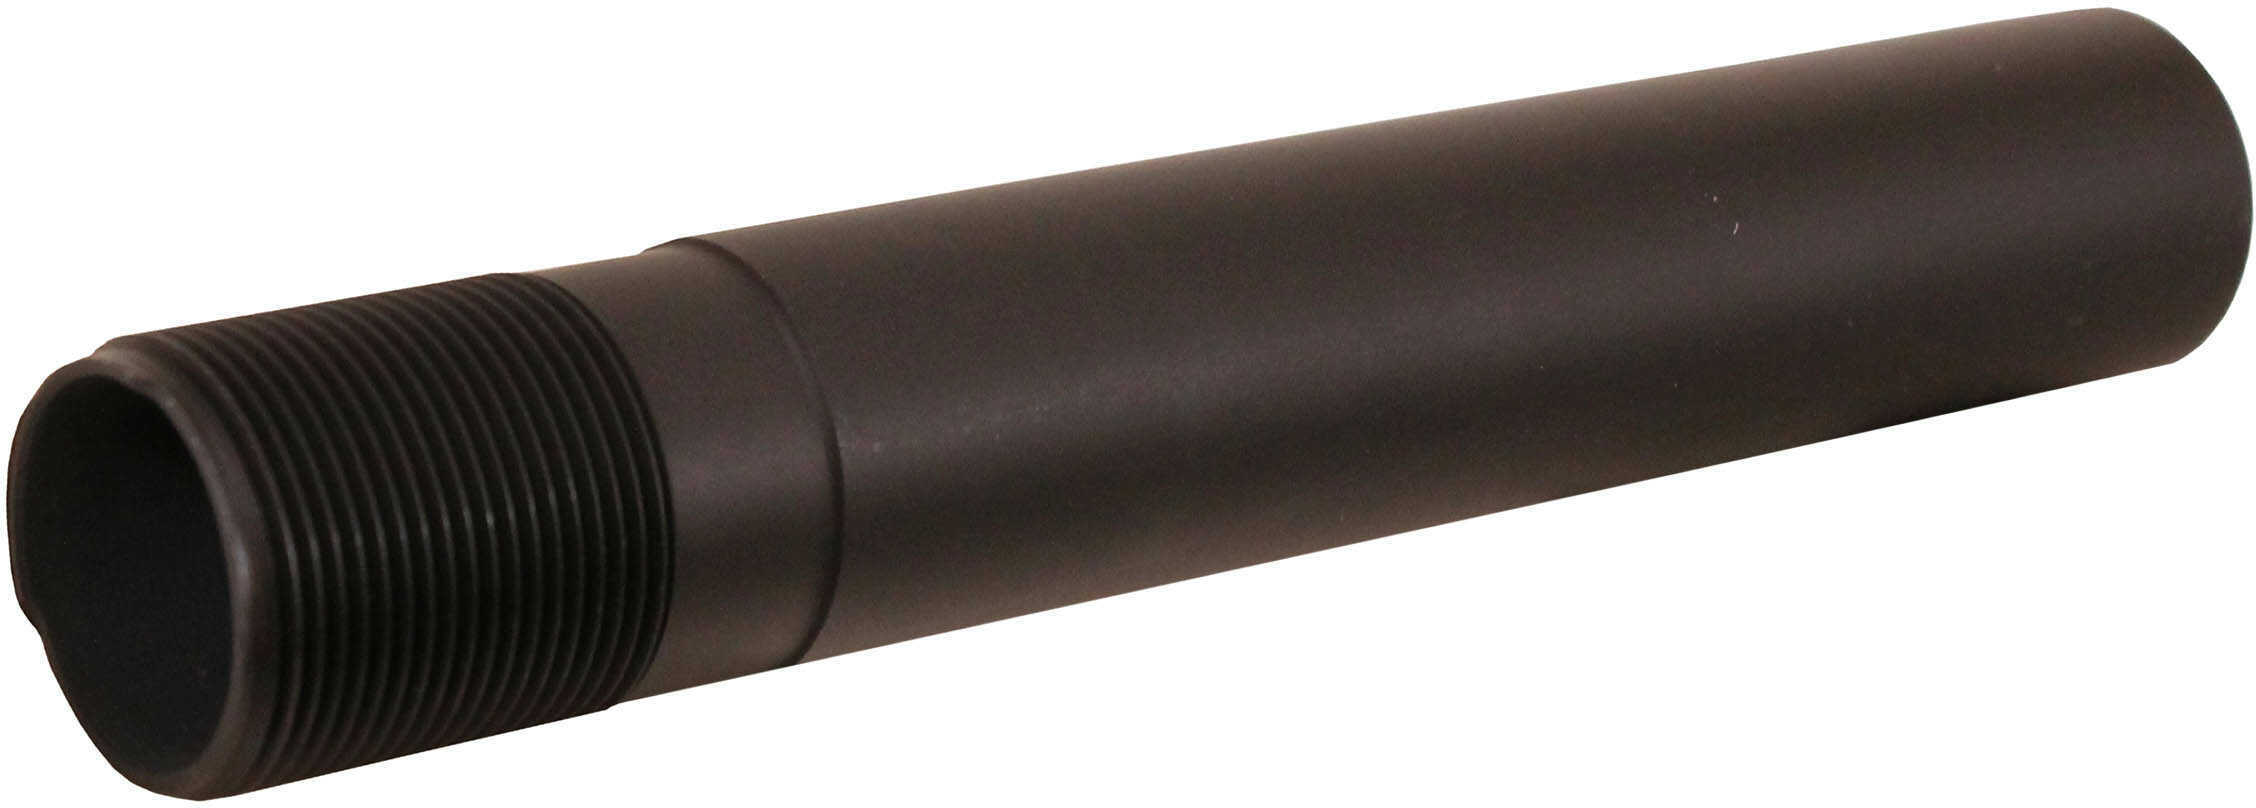 Leapers Inc. - UTG UTG PRO AR Pistol Receiver Extension Tube Matte Black TLU008